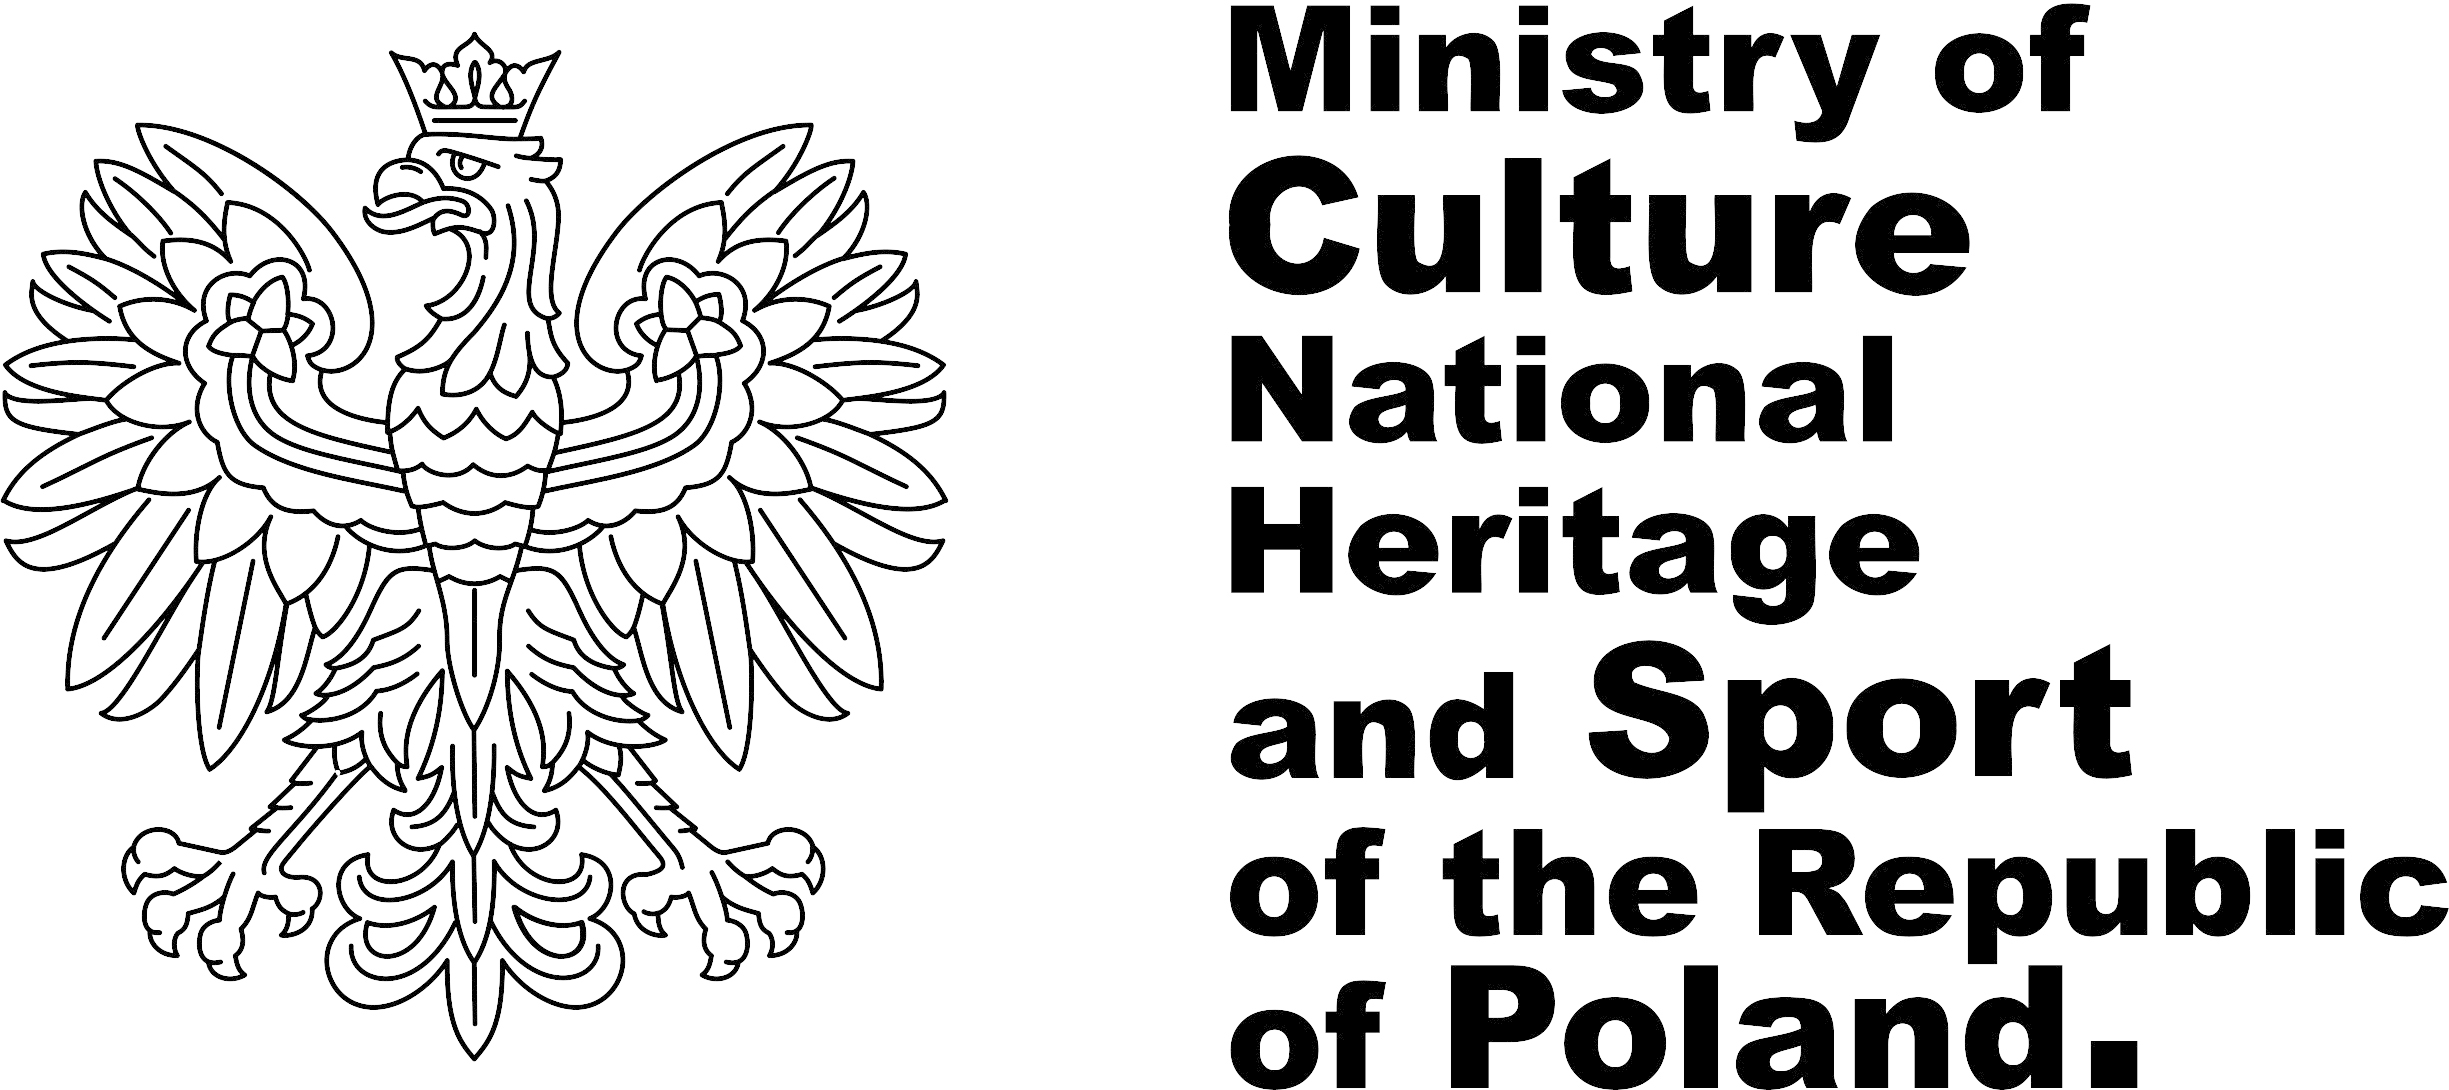 Ministerstwu Kultury i Dziedzictwa Narodowego